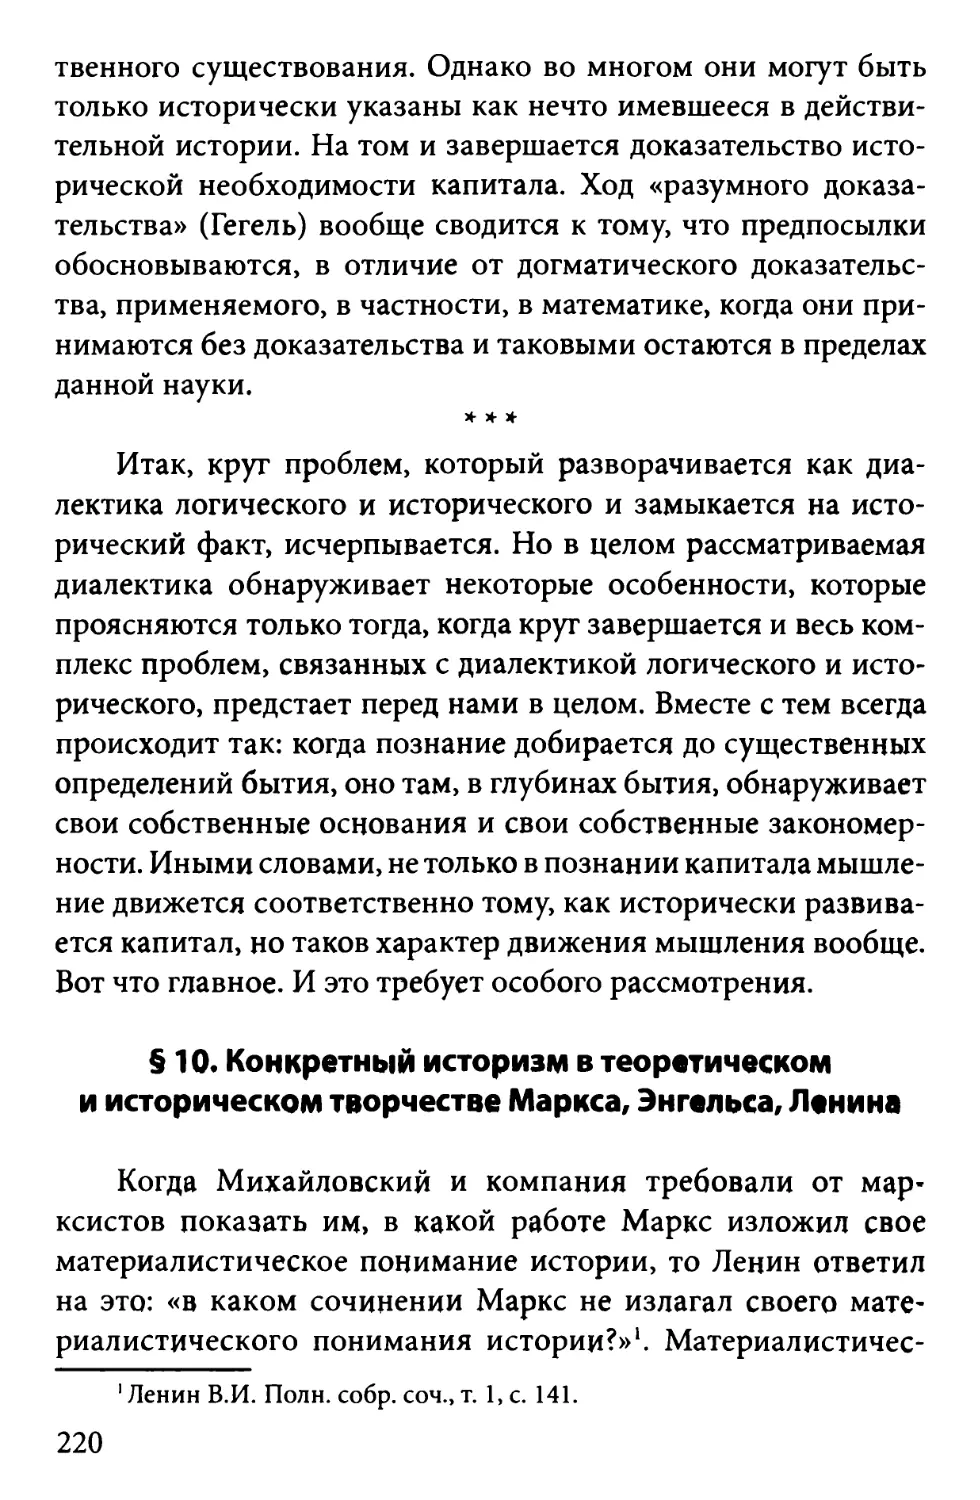 § 10. Конкретный историзм в теоретическом и историческом творчестве Маркса, Энгельса, Ленина